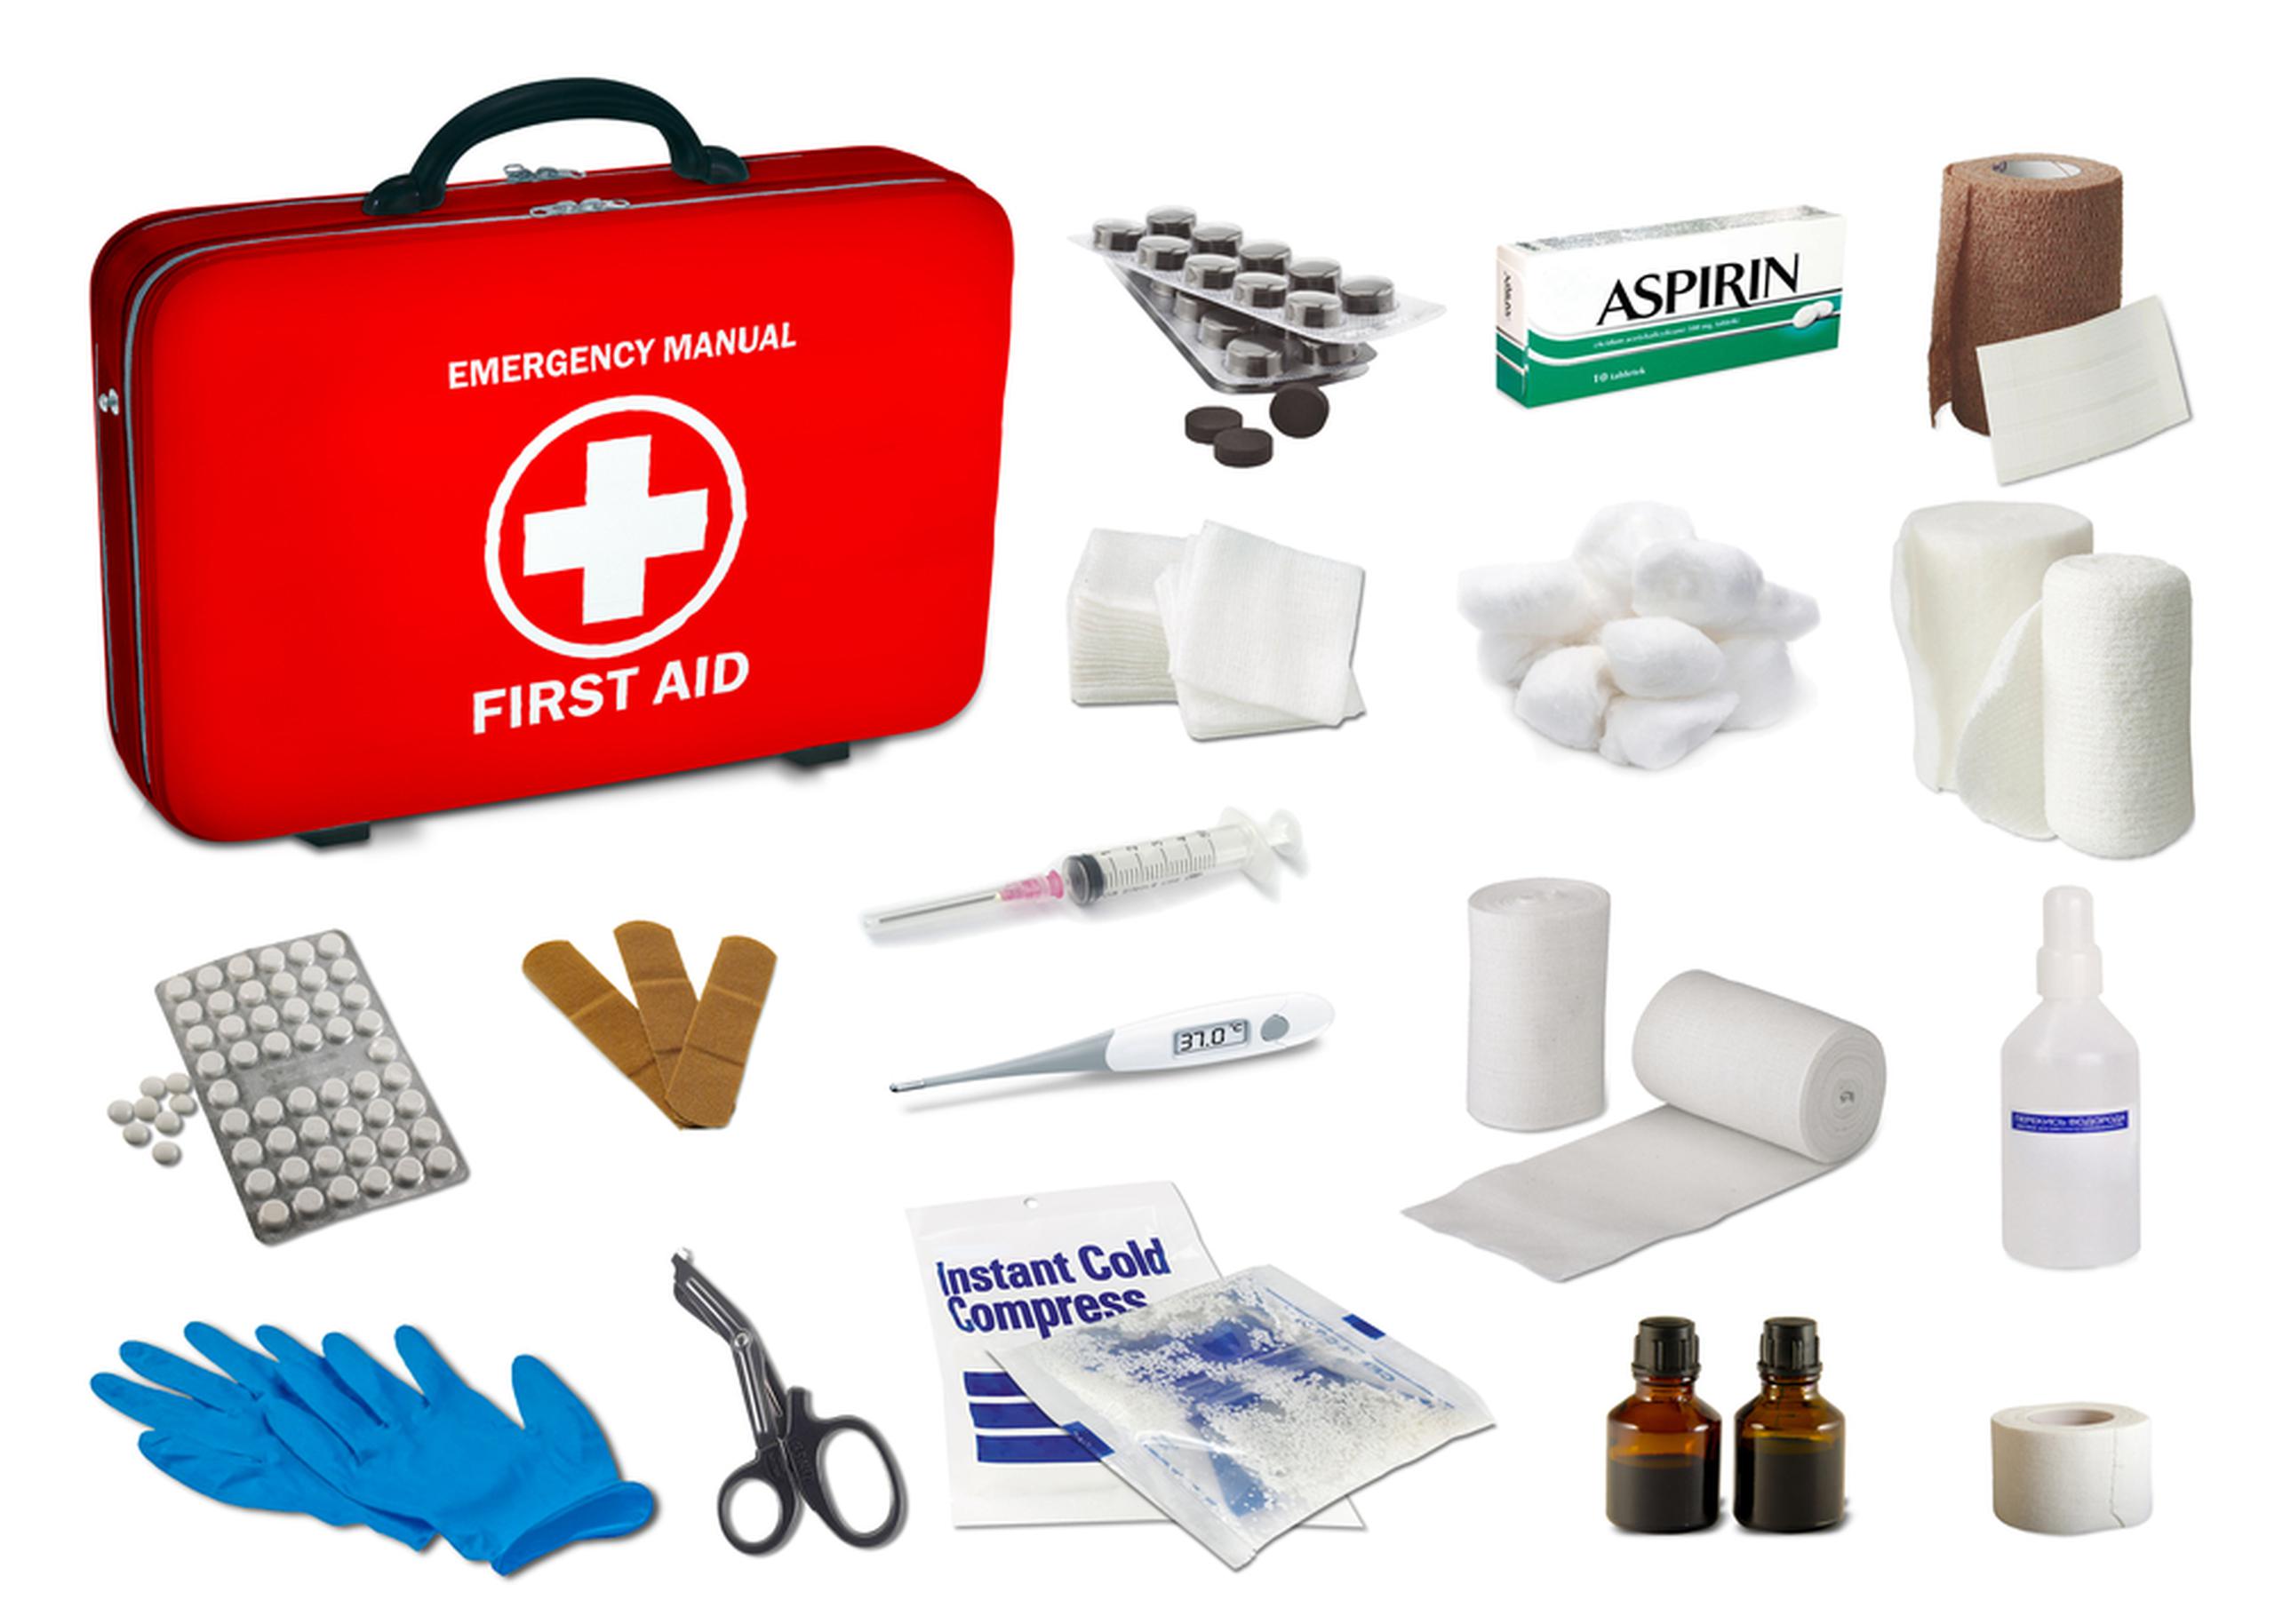 Lo básico que debe haber en todo kit de primeros auxilios son los guantes, las gasas, los vendajes y las curitas, entre otros, además de algunos medicamentos dependiendo de la condición de la persona como el acetaminofén y la aspirina.